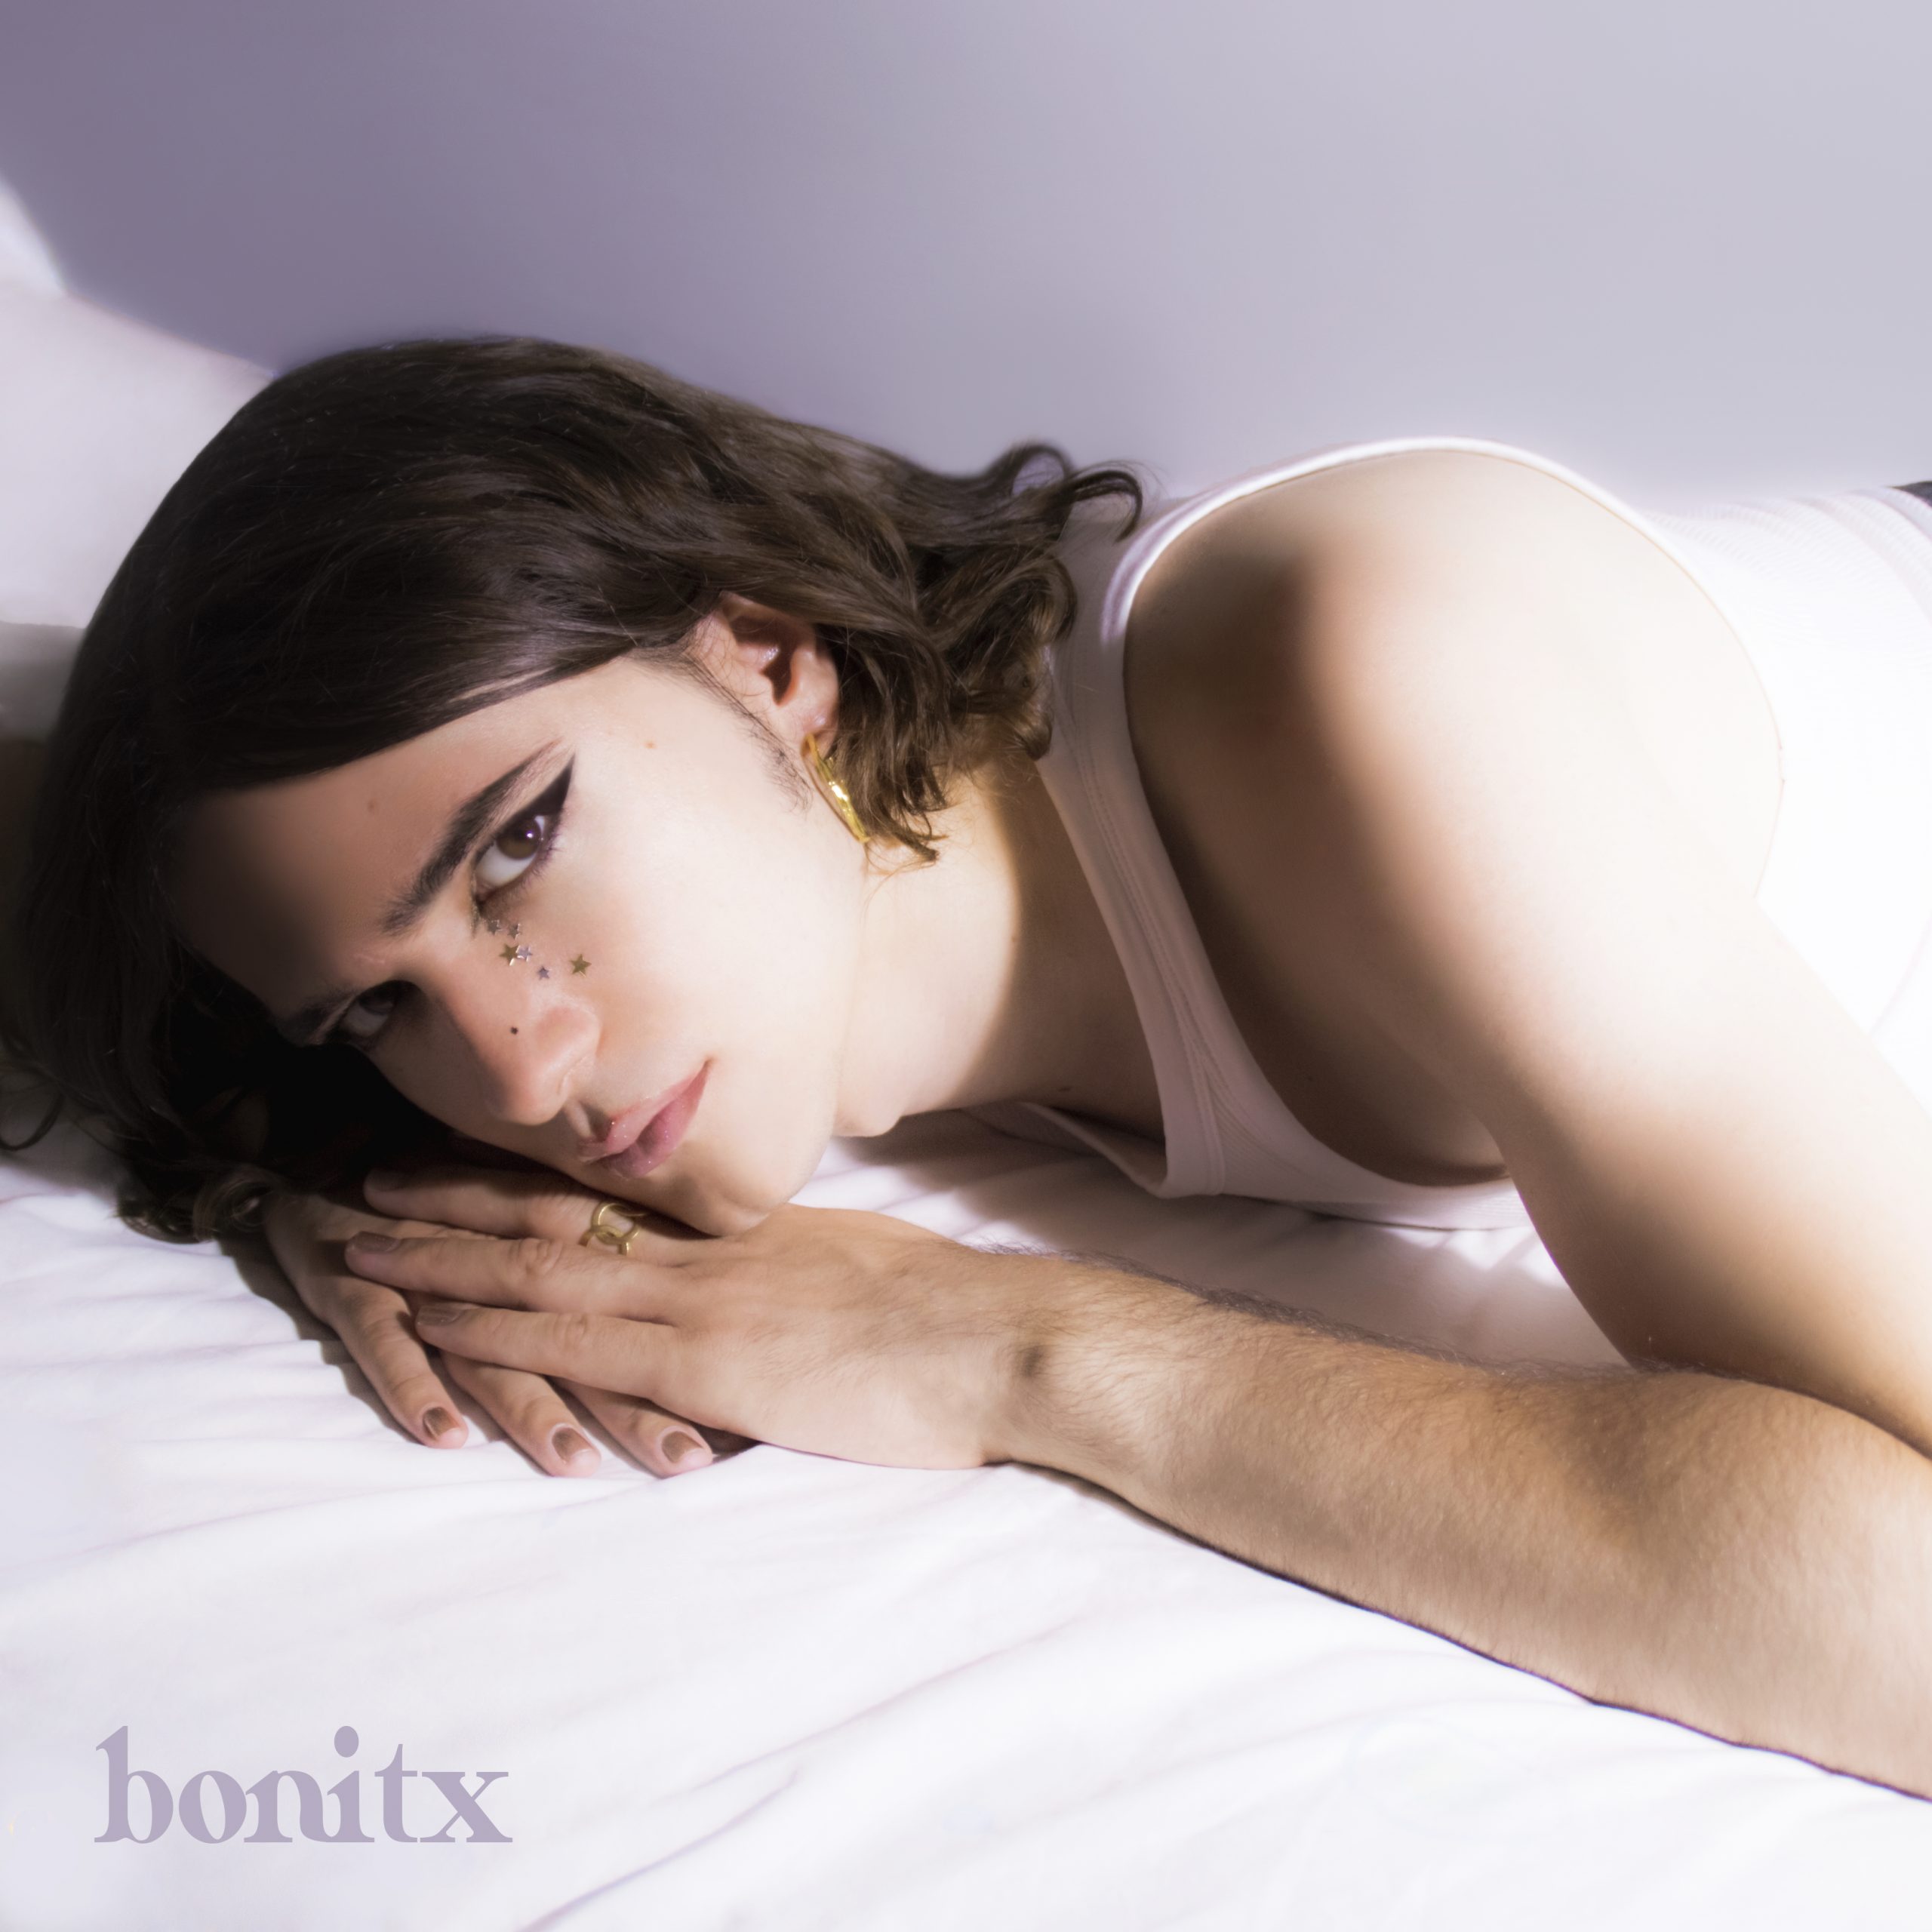 Bonitx "Bonitx" LP